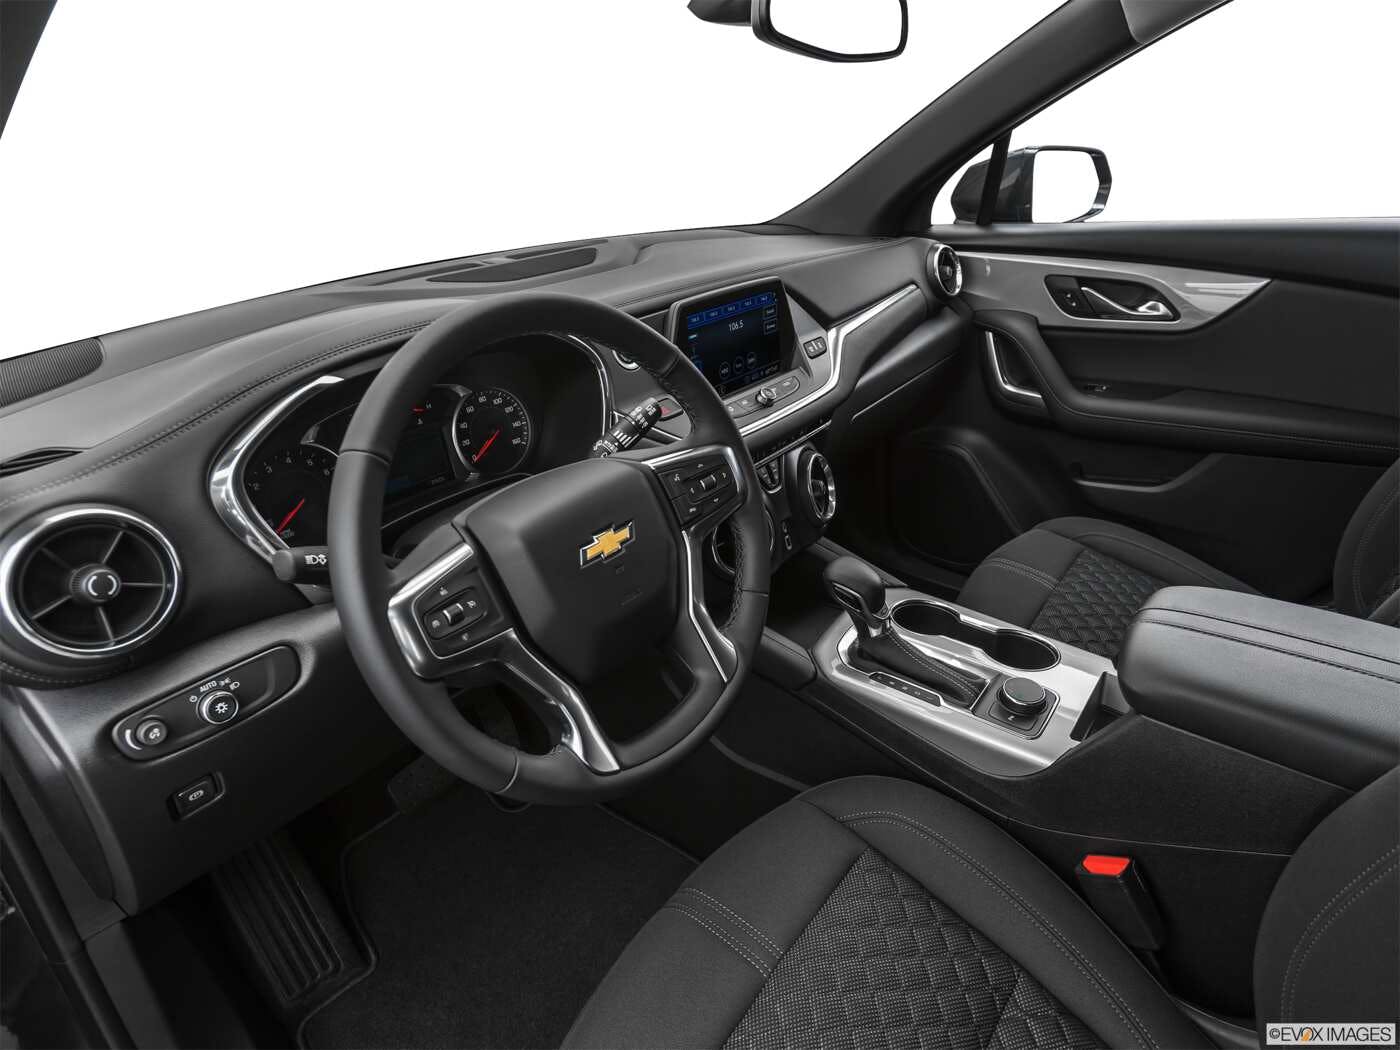 2023 Chevrolet Blazer Review | Pricing, Trims & Photos - TrueCar